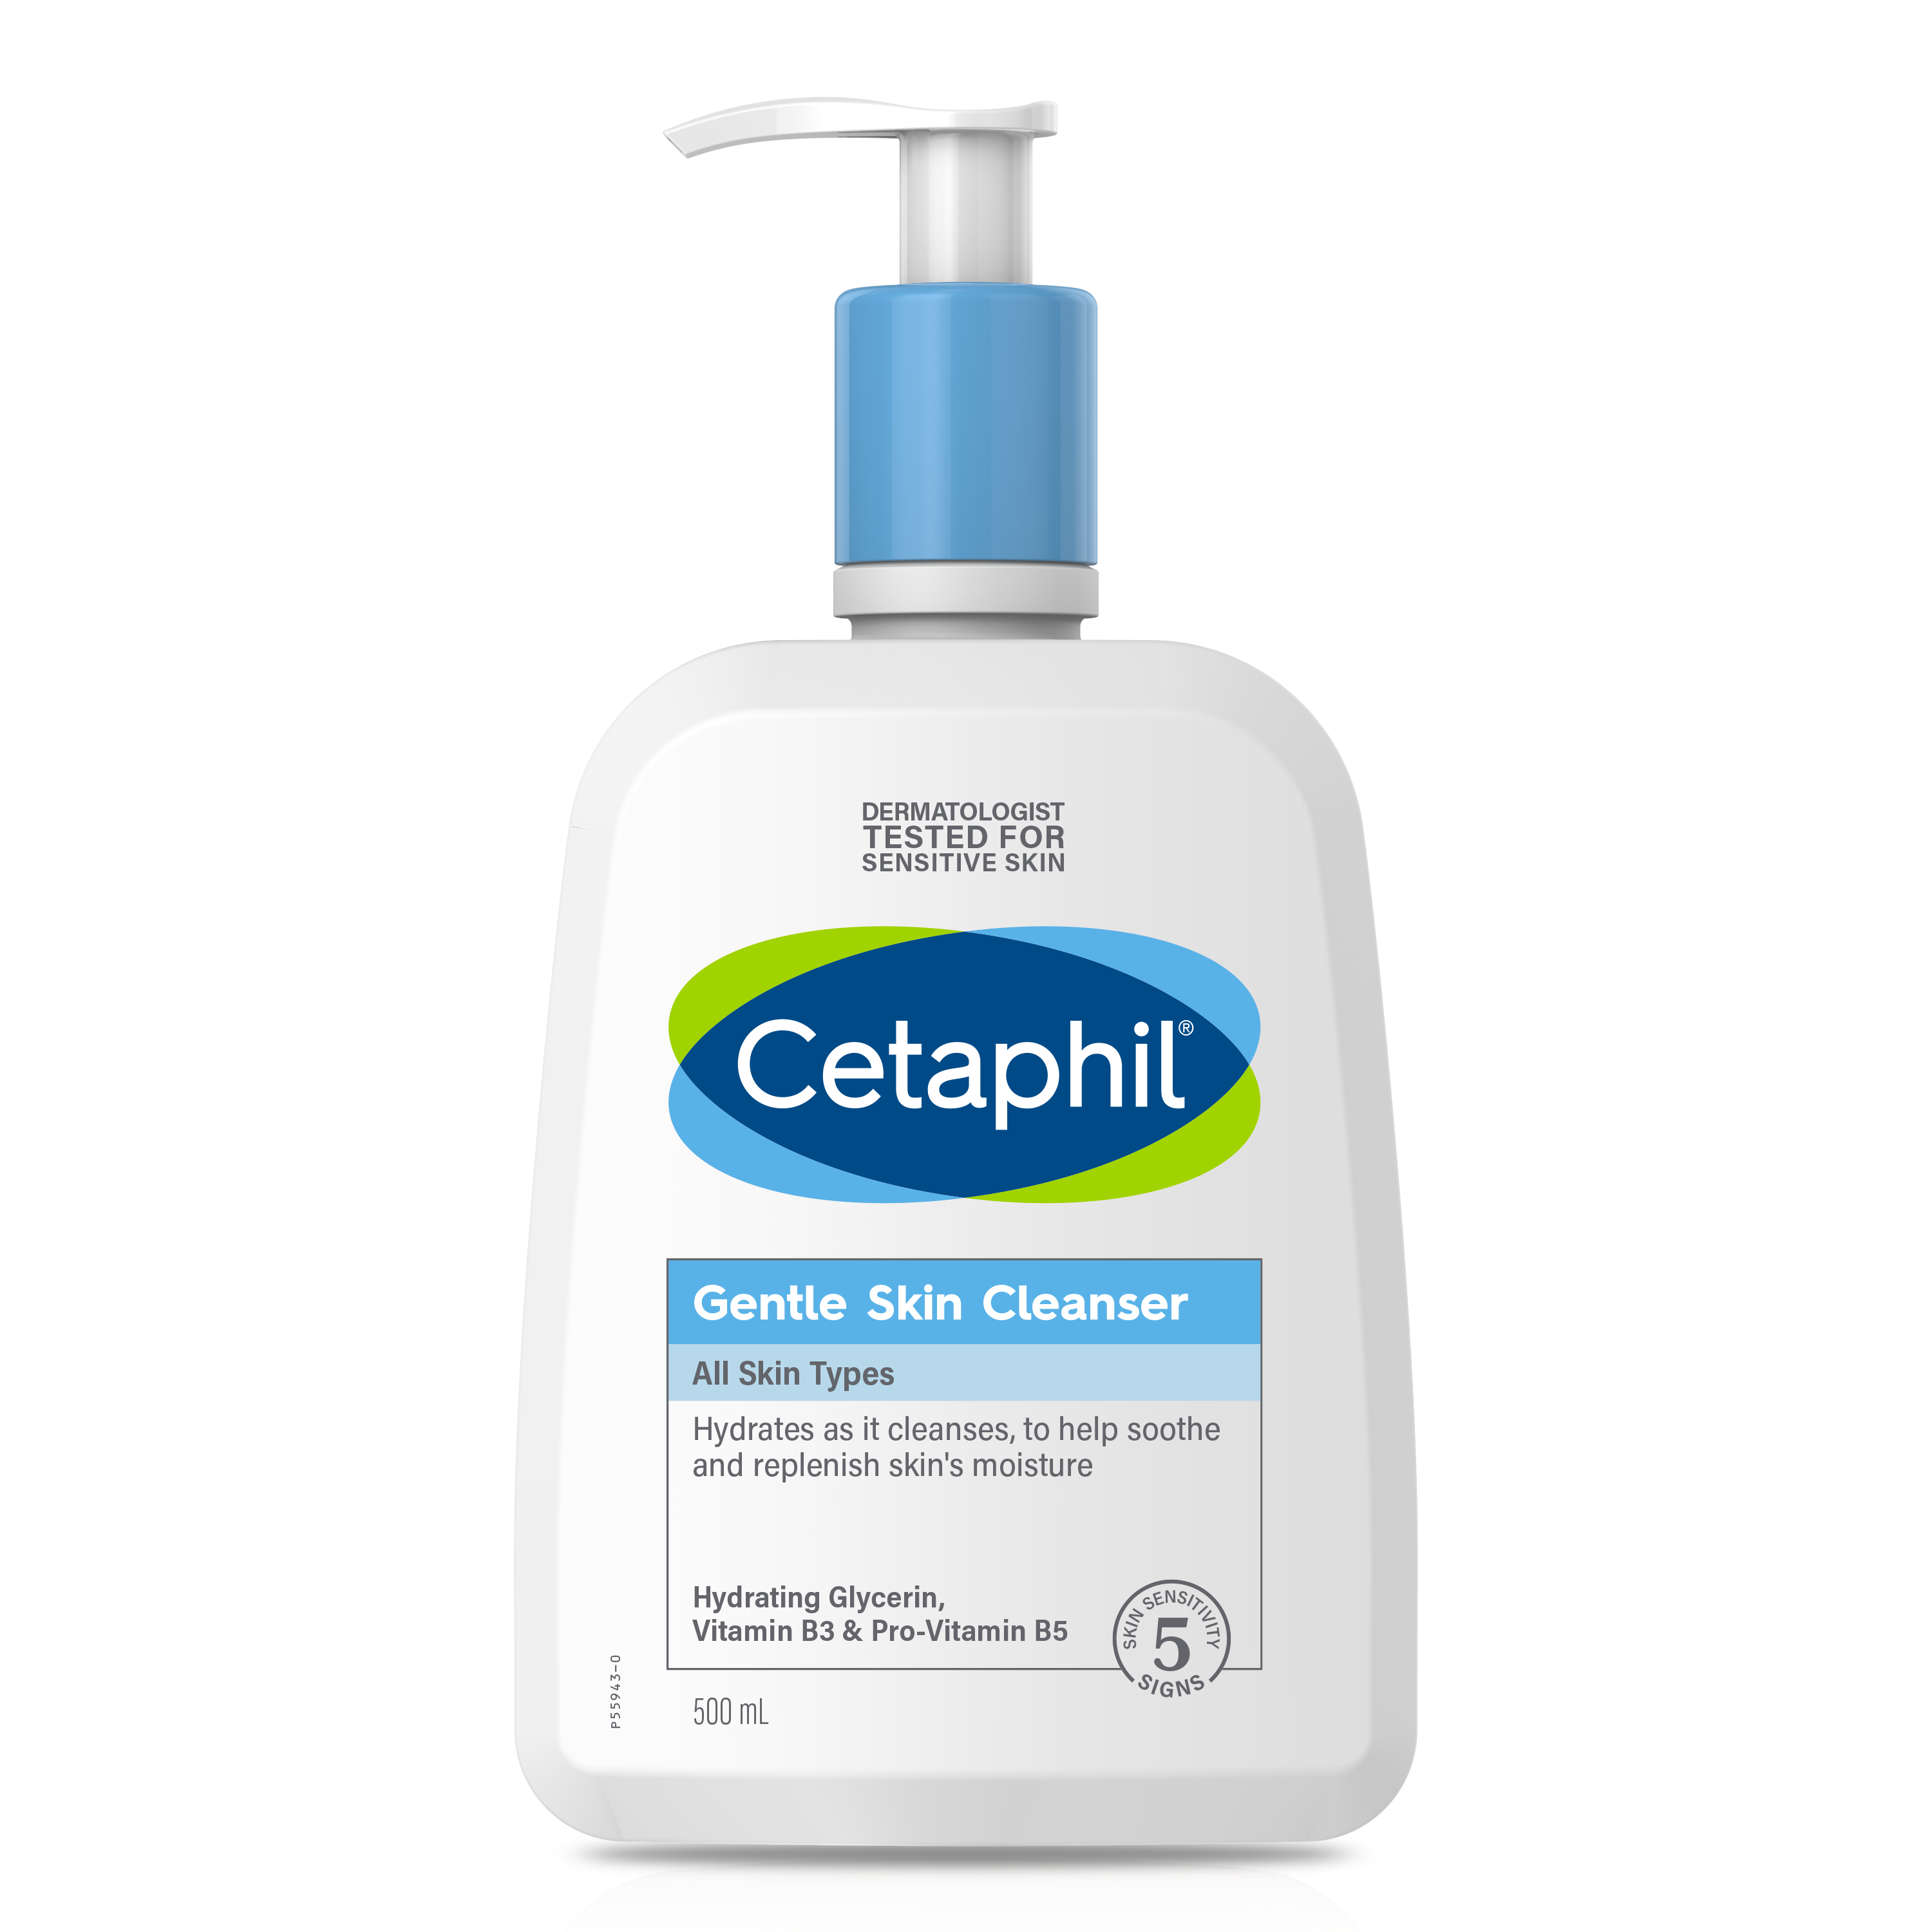 Cetaphil Gentle Skin Cleanser sẽ là lựa chọn lý tưởng để rửa mặt hàng ngày, vừa an toàn, lành tính, duy trì màng ẩm tư nhiên và kích thích sản sinh Ceramide